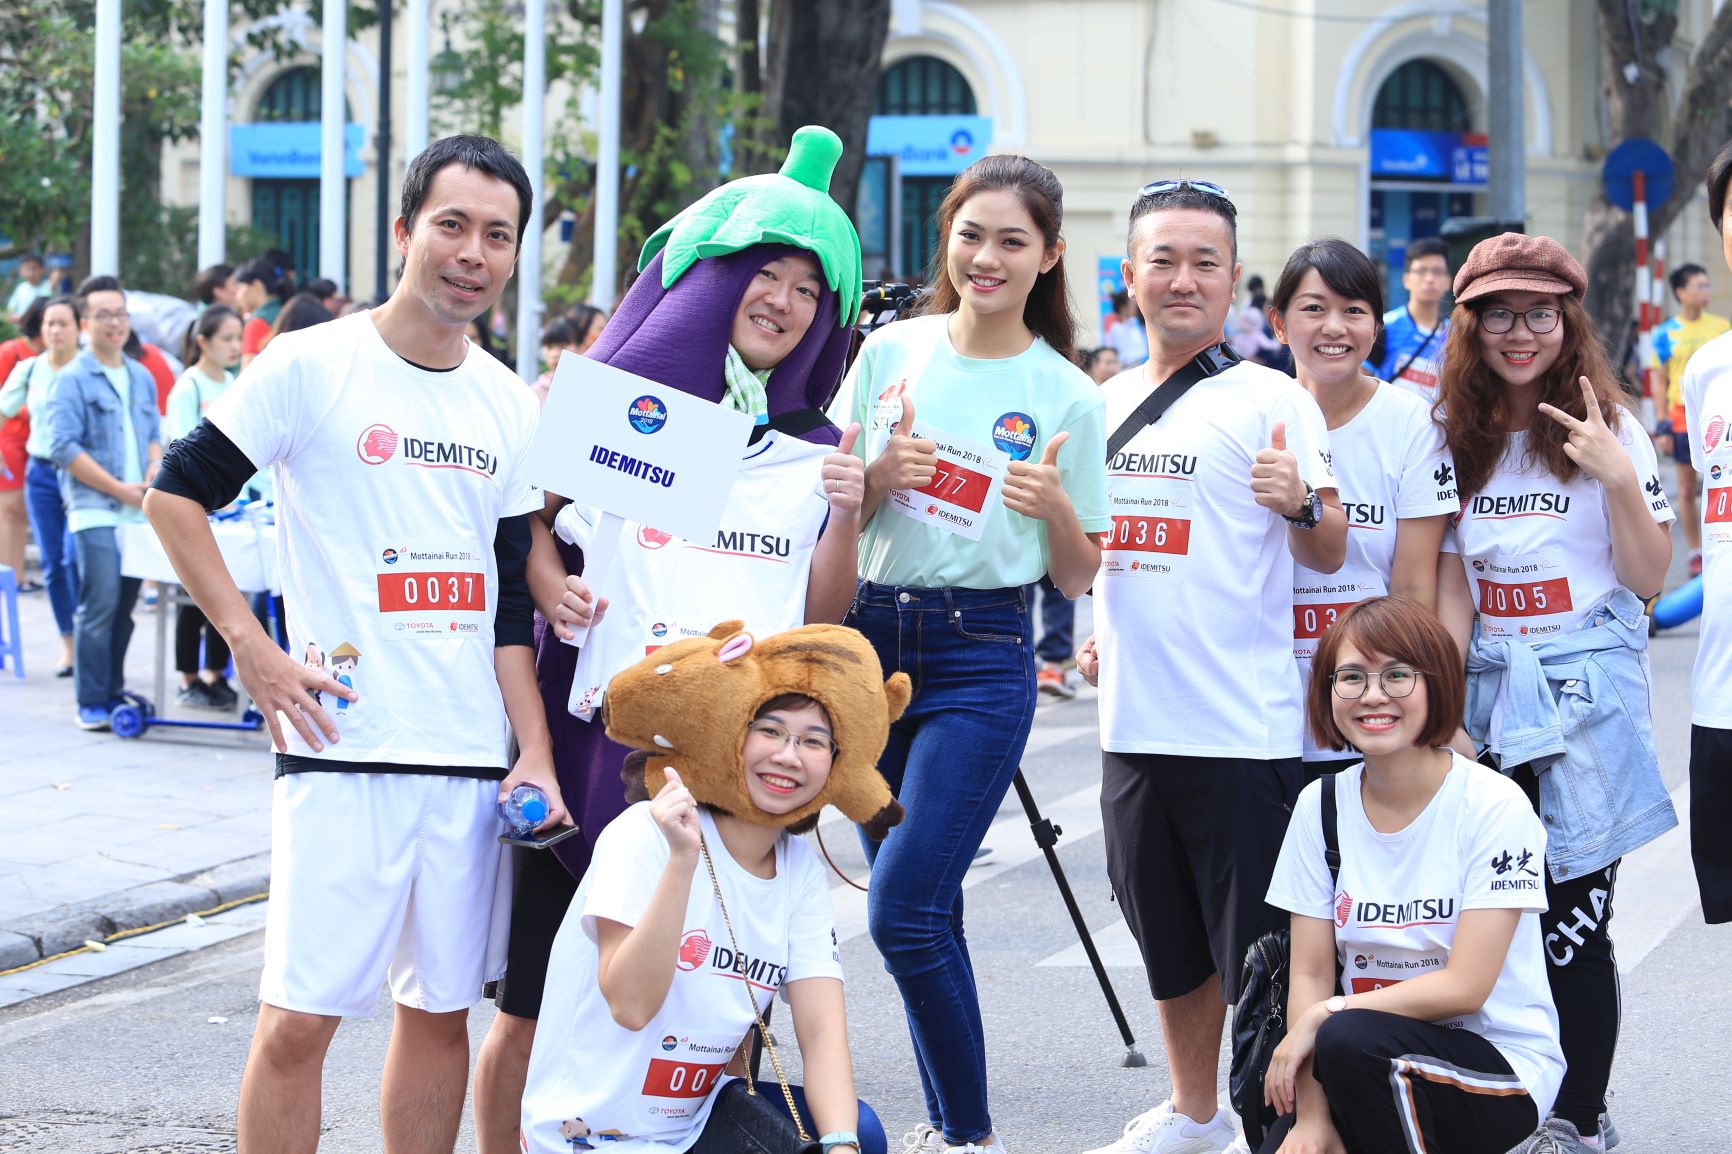 Hoa khôi Phụ nữ Việt Nam qua ảnh 2017 Vũ Hương Giang - Đại sứ Chương trình Mottainai 2018 cổ vũ cho các vận động viên trước giờ chạy.